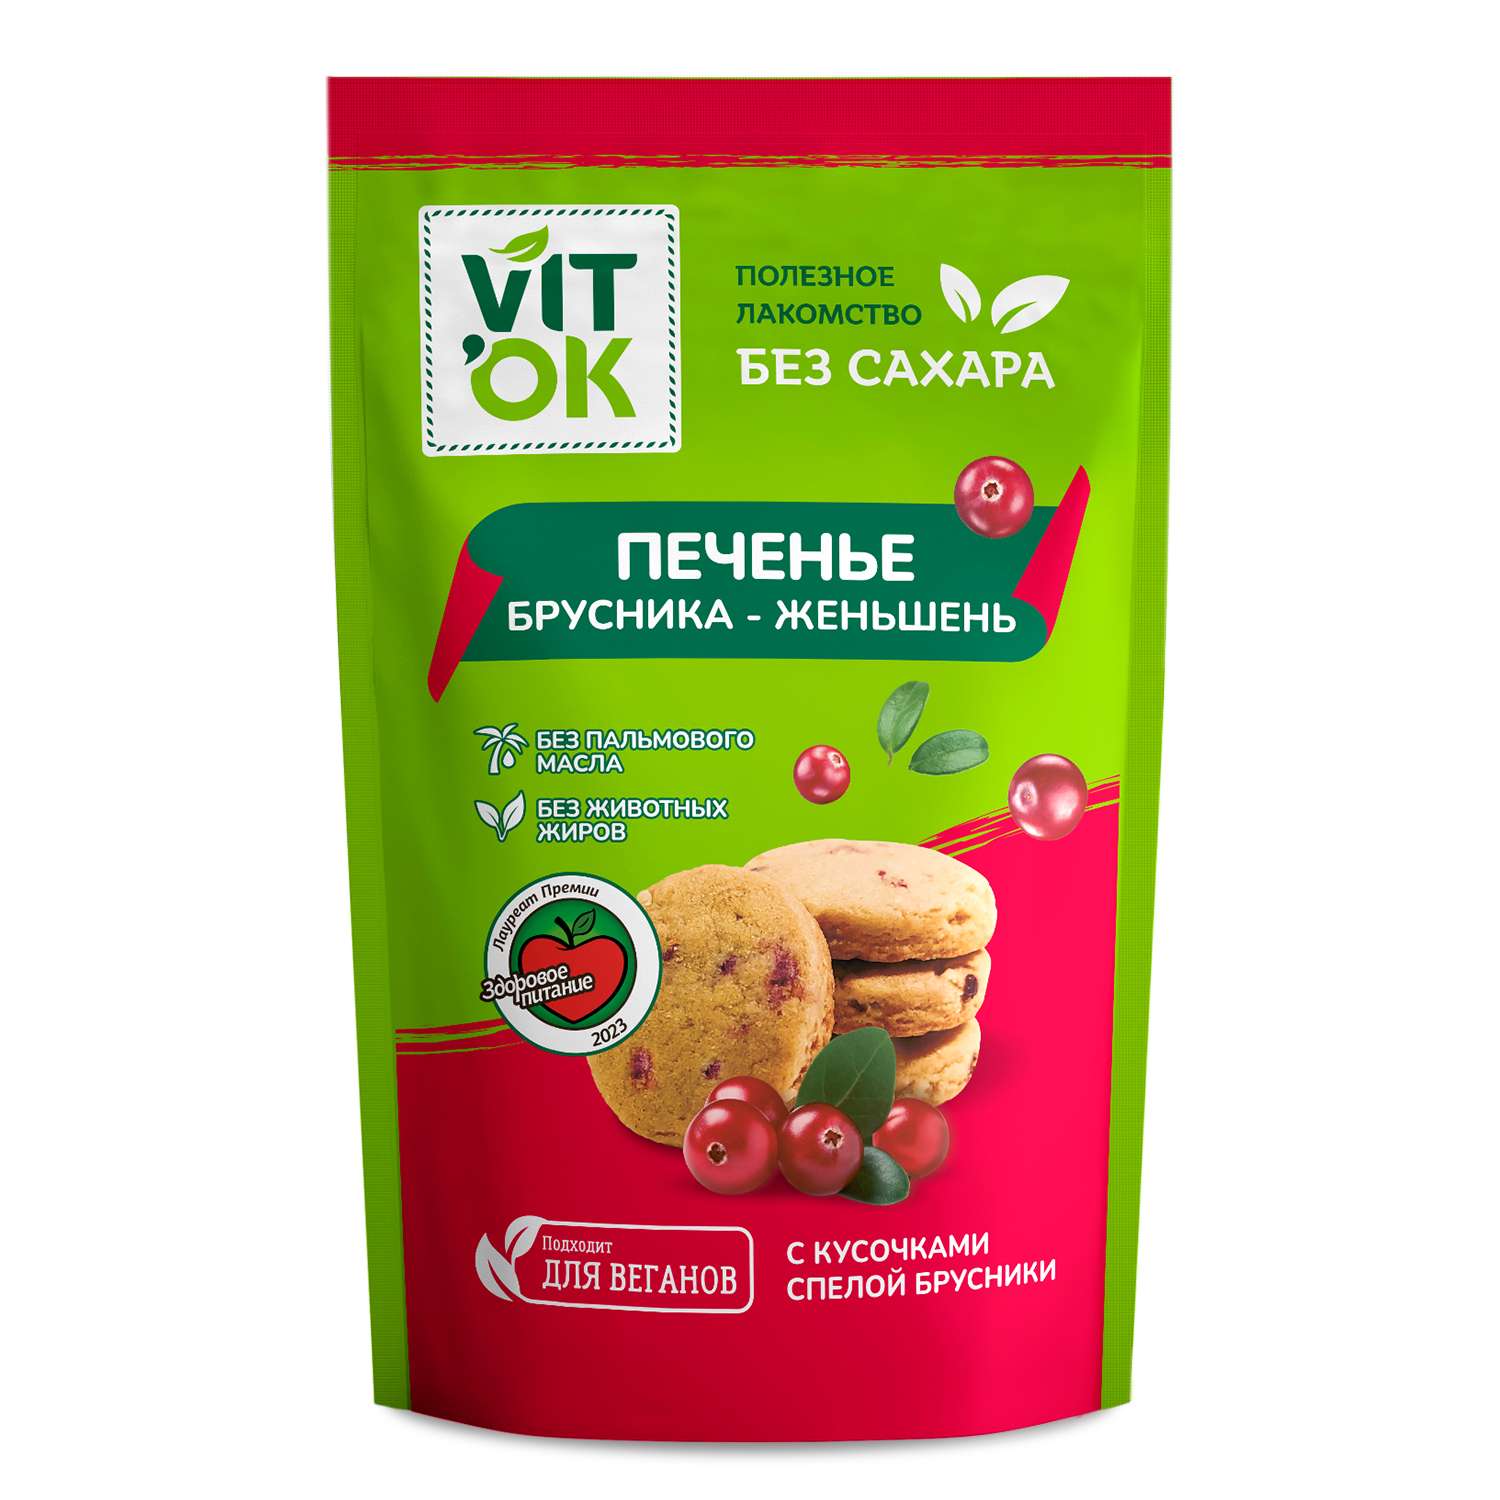 Печенье VITok полезное натуральное без сахара с брусникой и женьшенем 8 шт. по 100 г - фото 1